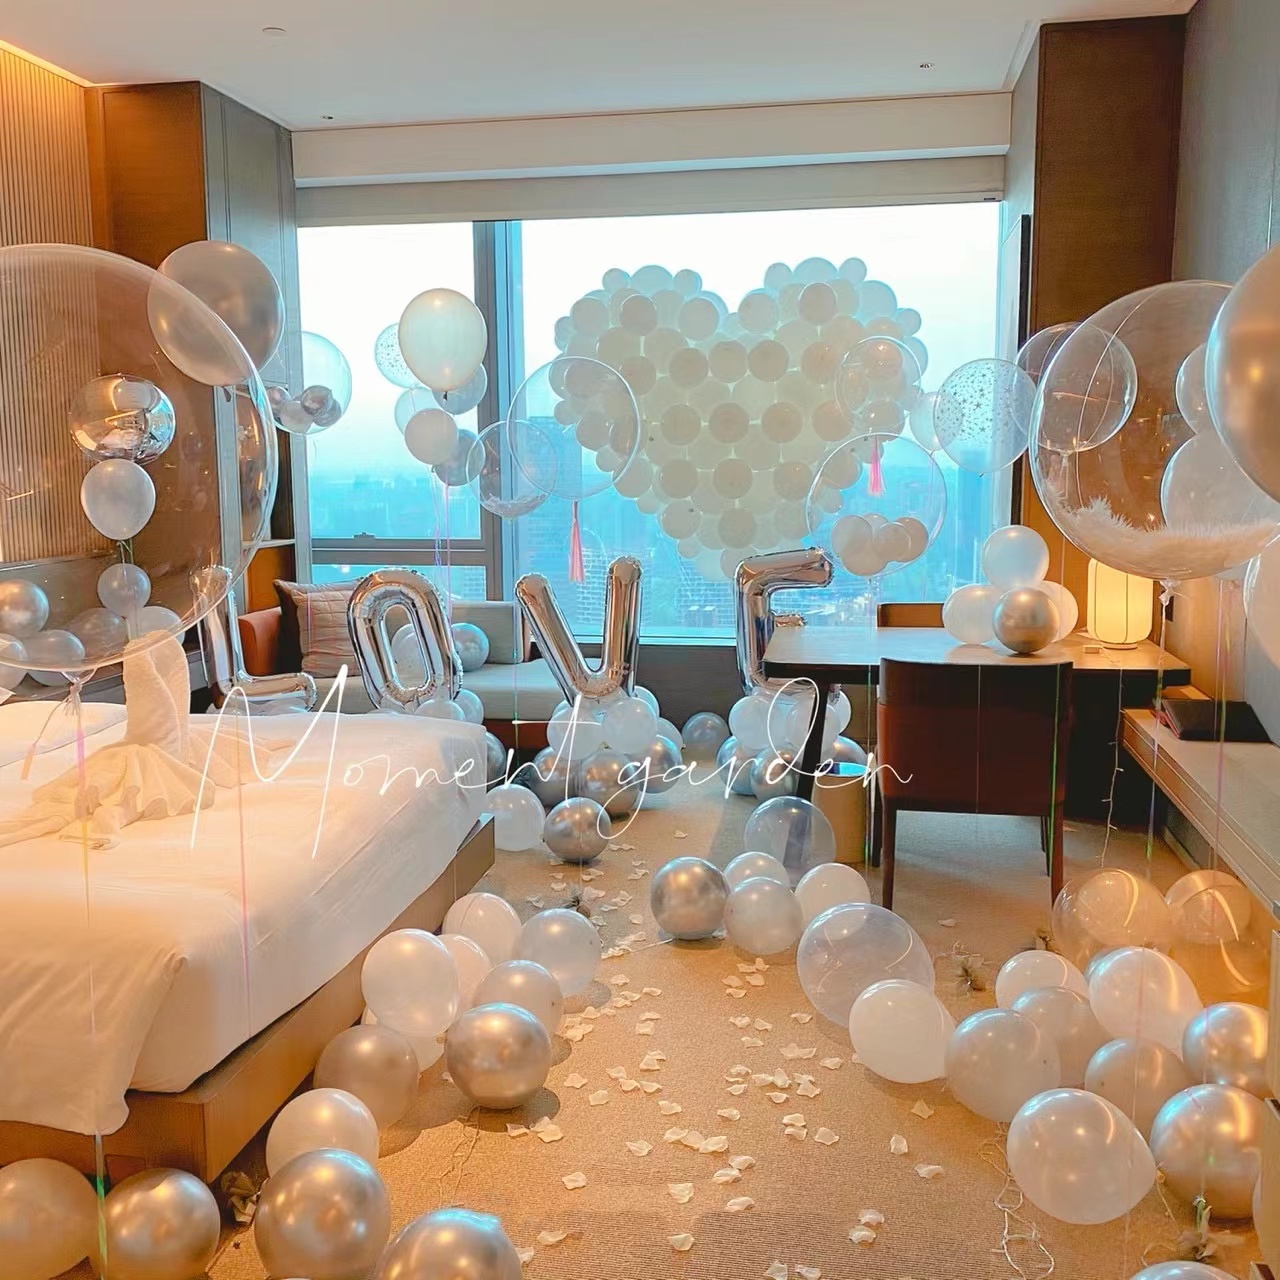 网红求婚室内布置道具告白气球装饰浪漫创意用品房间表白背景墙